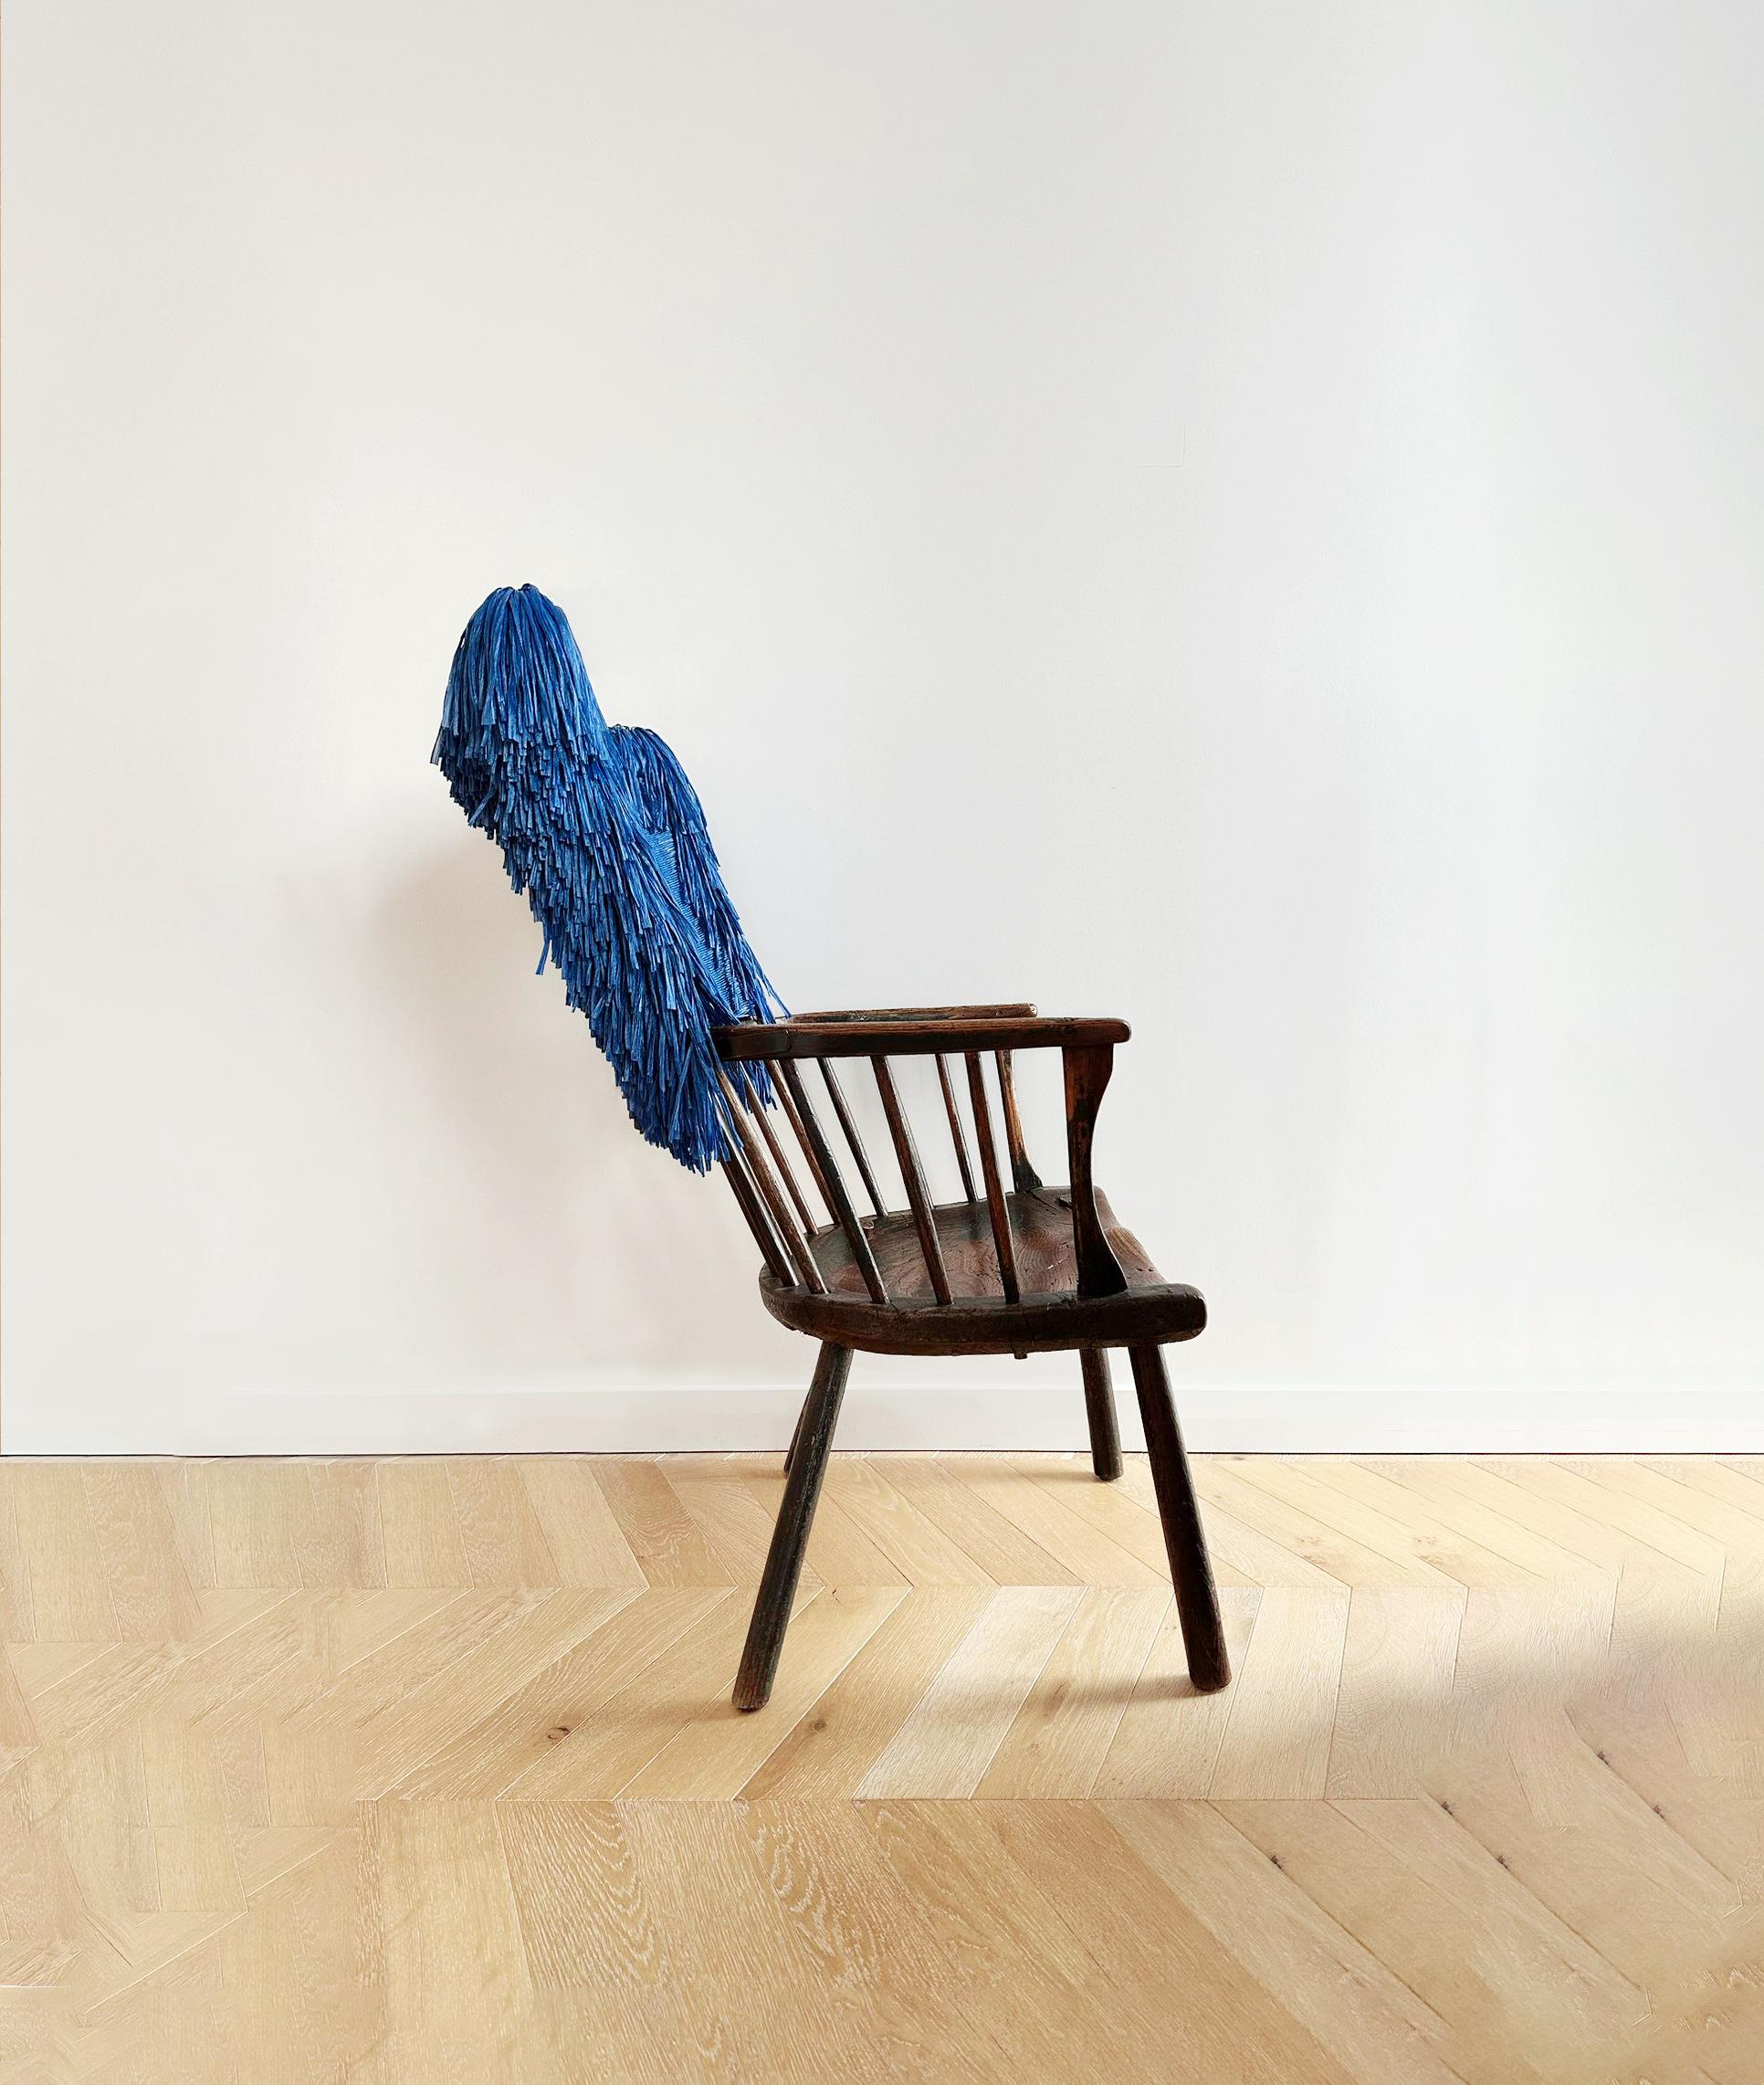 La marque de mode Loewe a collaboré avec des artisans mondiaux pour créer une collection de chaises en bois décorées de matériaux tissés, notamment de la feuille d'aluminium, du shearling et du papier, qui a été présentée dans le cadre de la Semaine